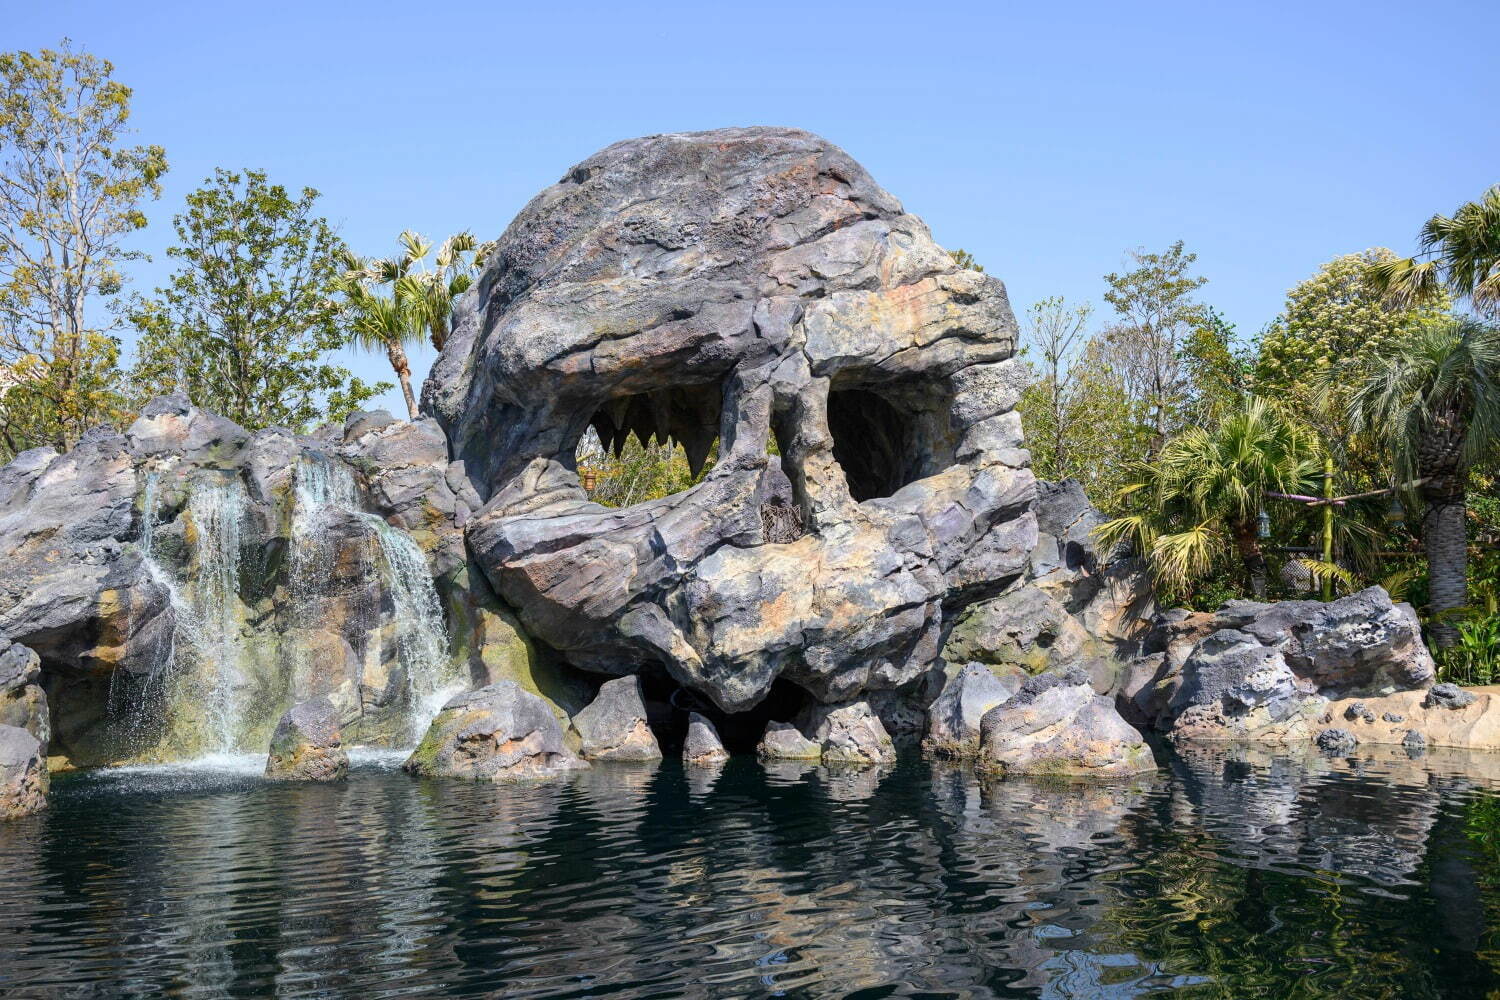 「ピーターパンのネバーランド」ドクロ岩